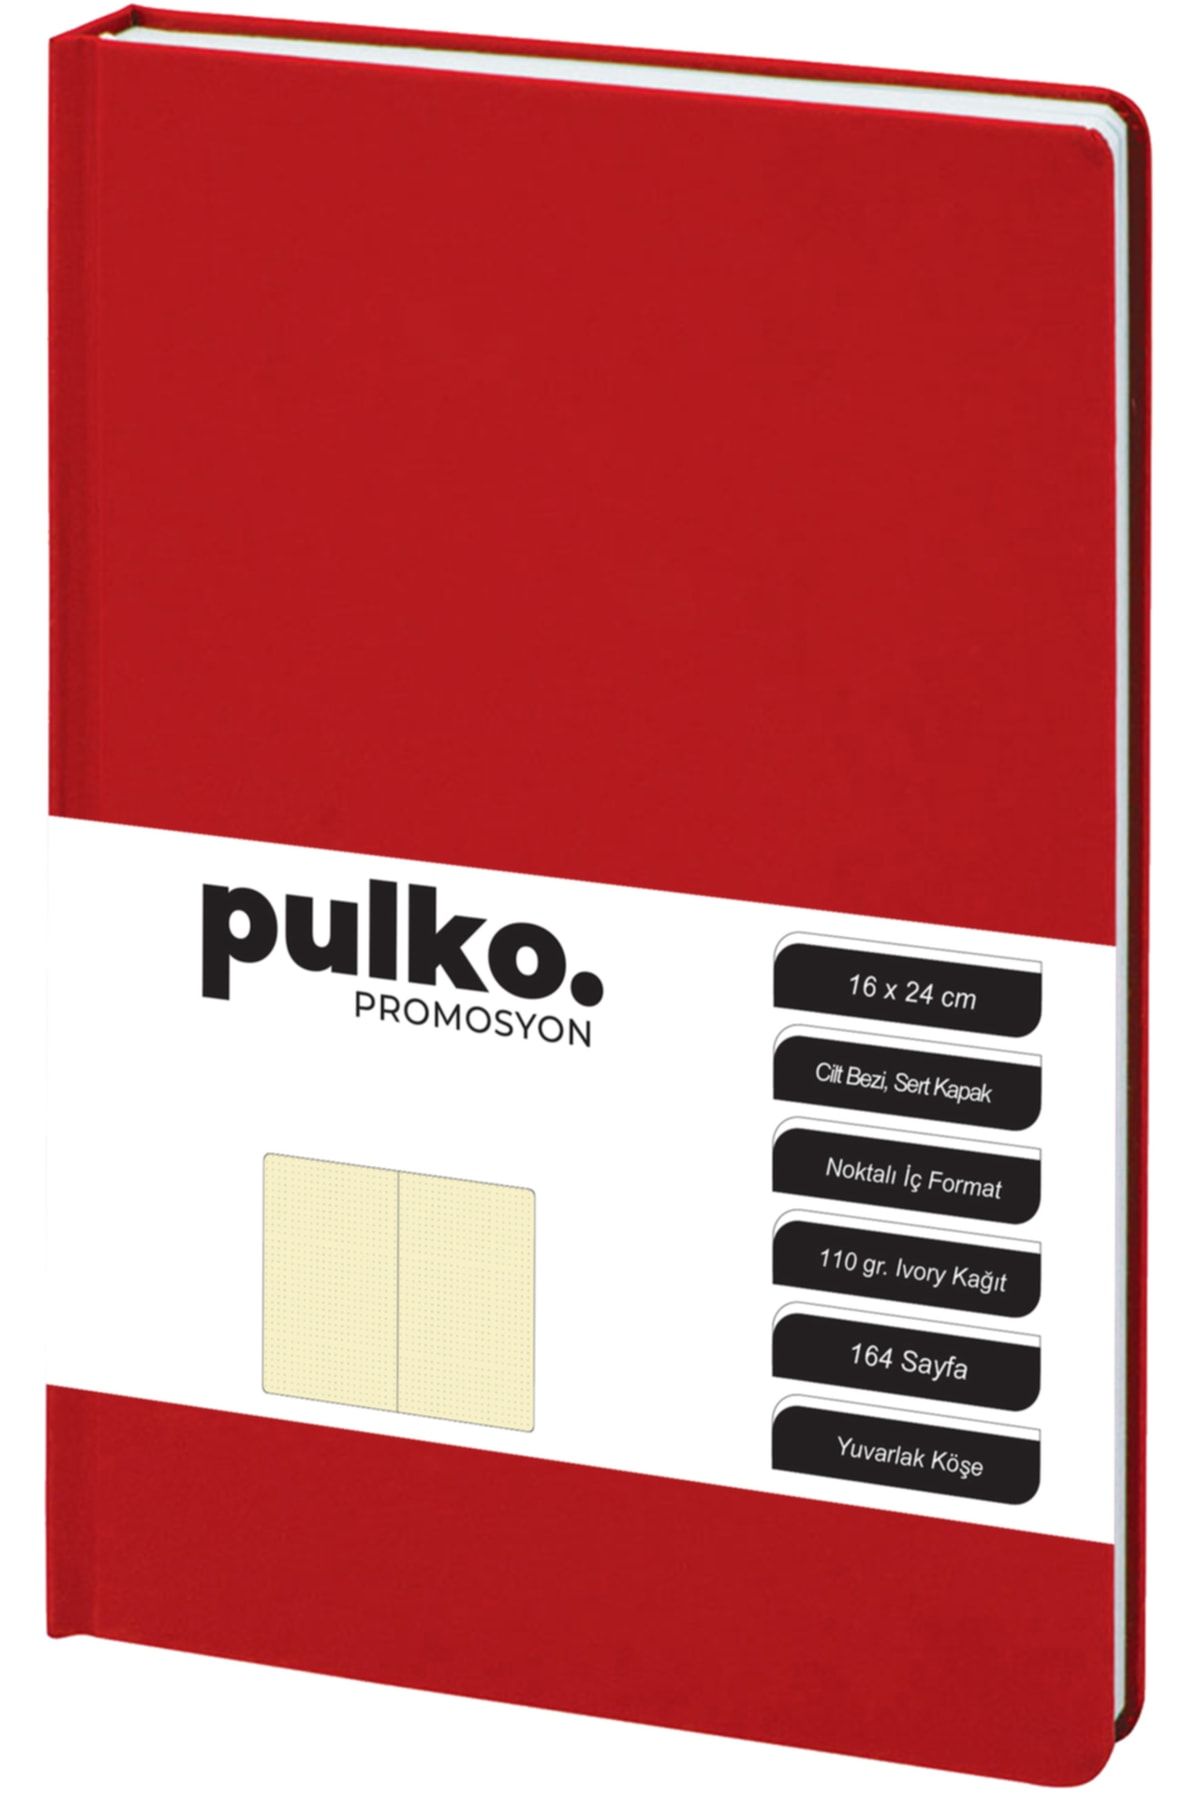 PULKO Promosyon Not Defteri, 110gr Kağıt, (16x24cm), Cilt Bezi, 164 Sayfa, Noktalı, 043, Kırmızı